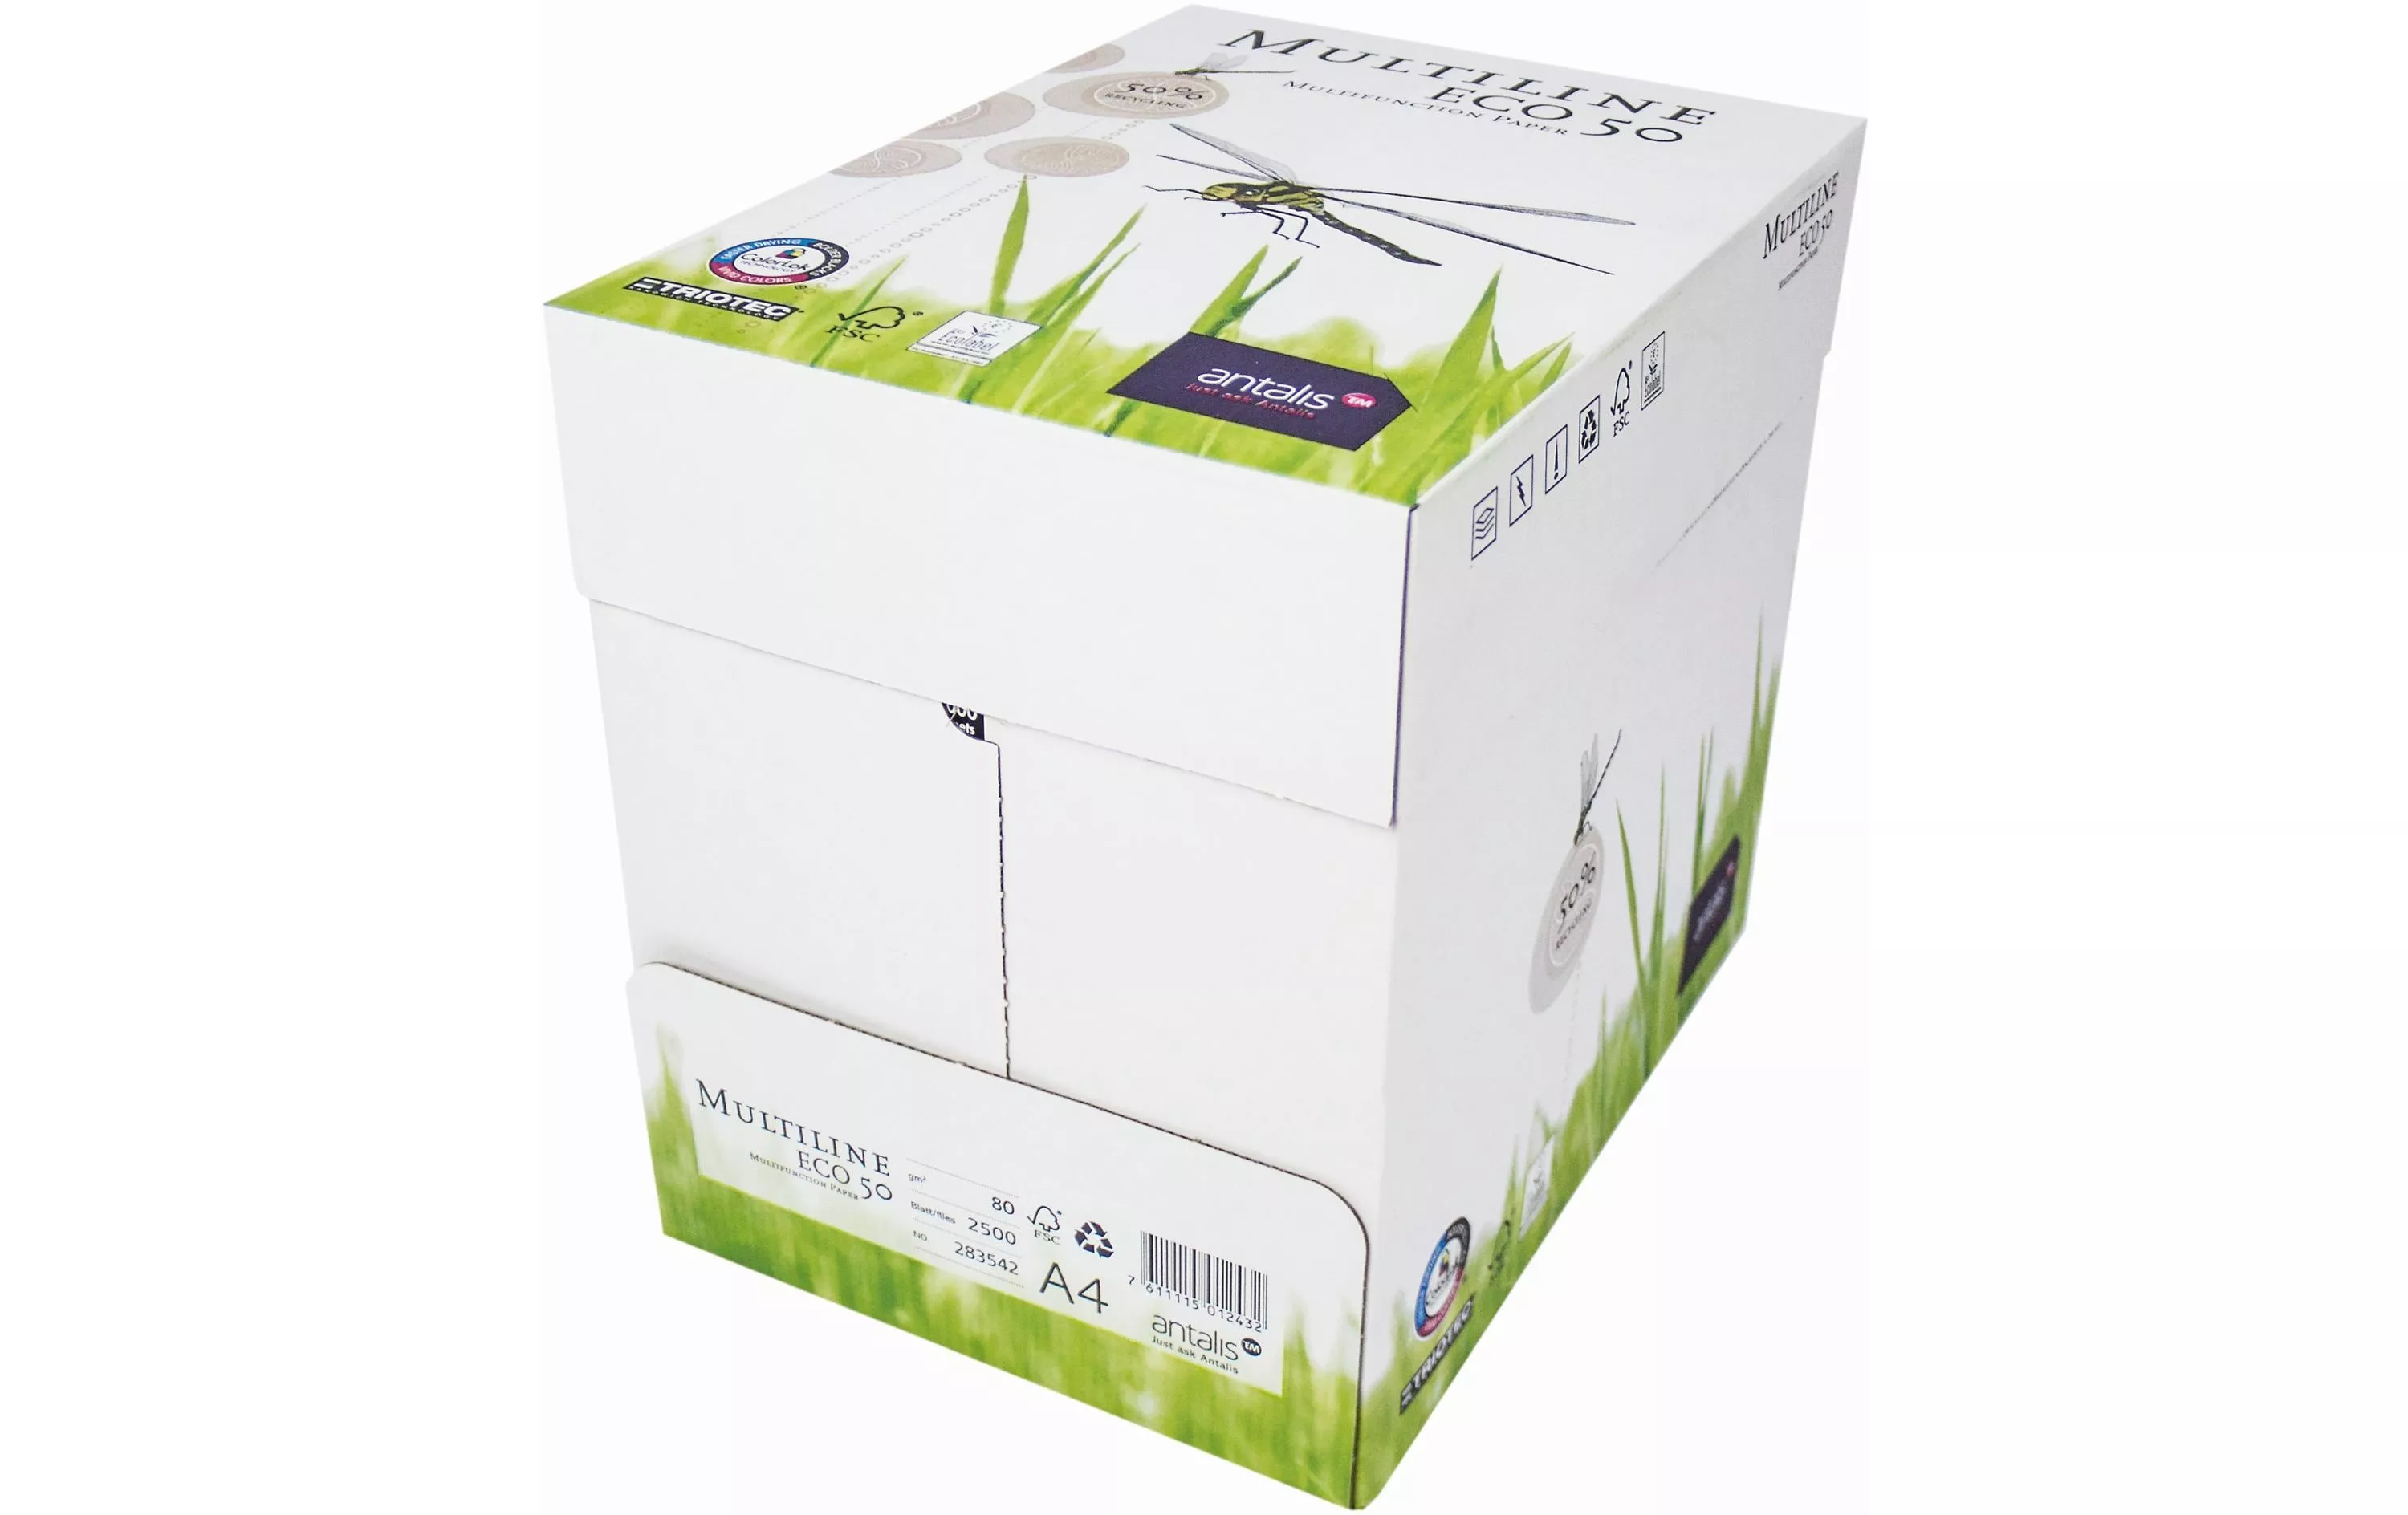 Papier pour photocopie Multiline Eco 50 A4, Blanc, 80 g/m²,2500 feuilles